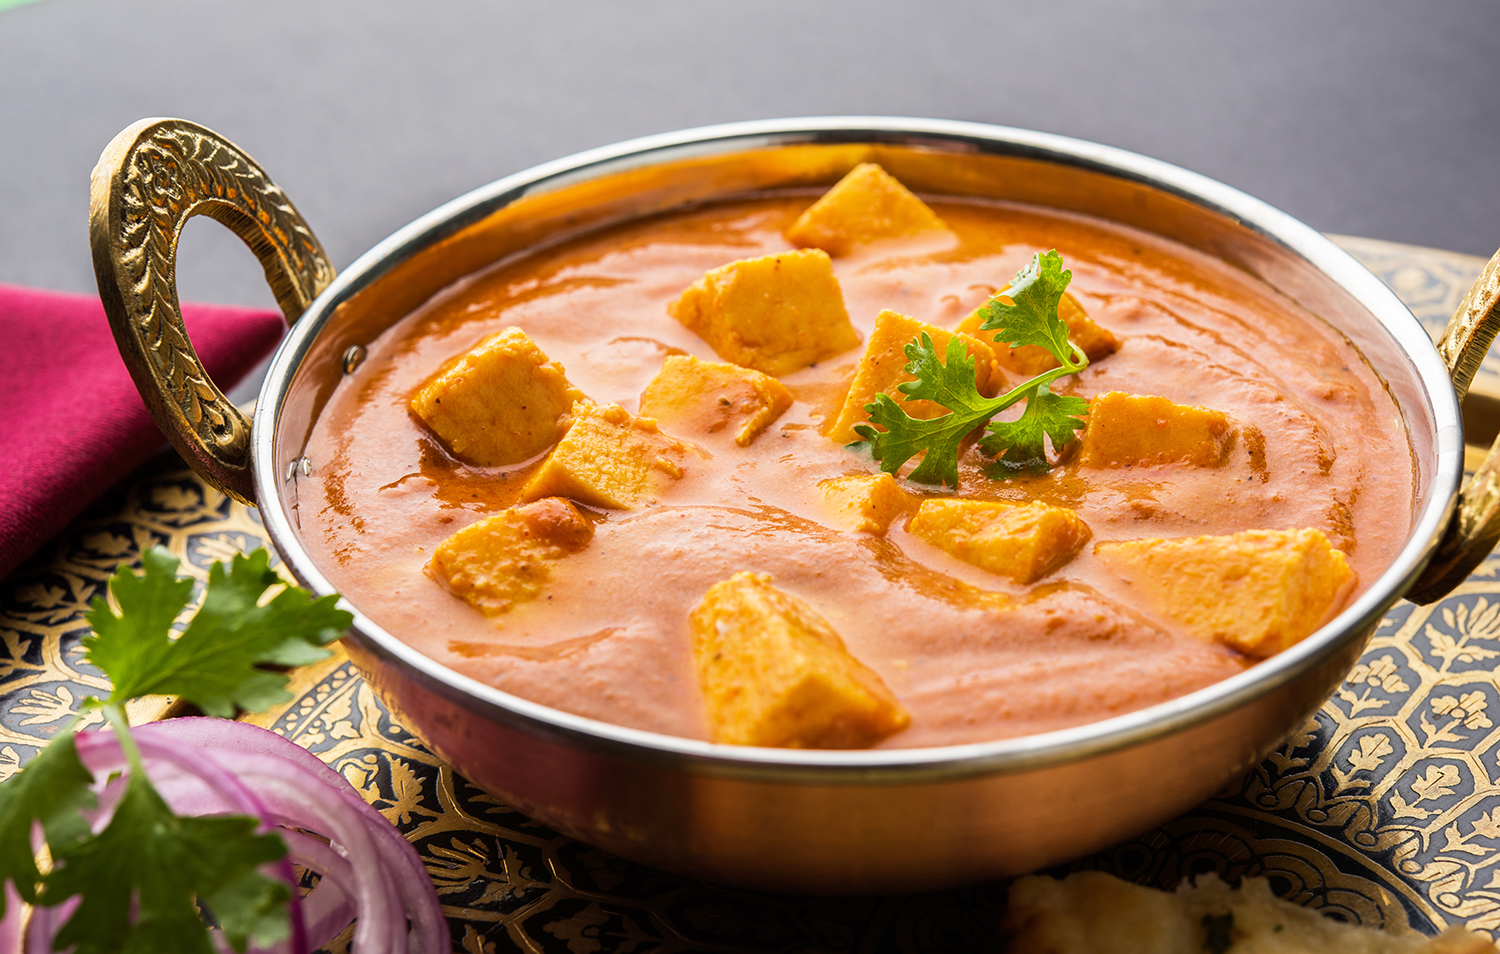 Best Rated Punjabi Food - TasteAtlas